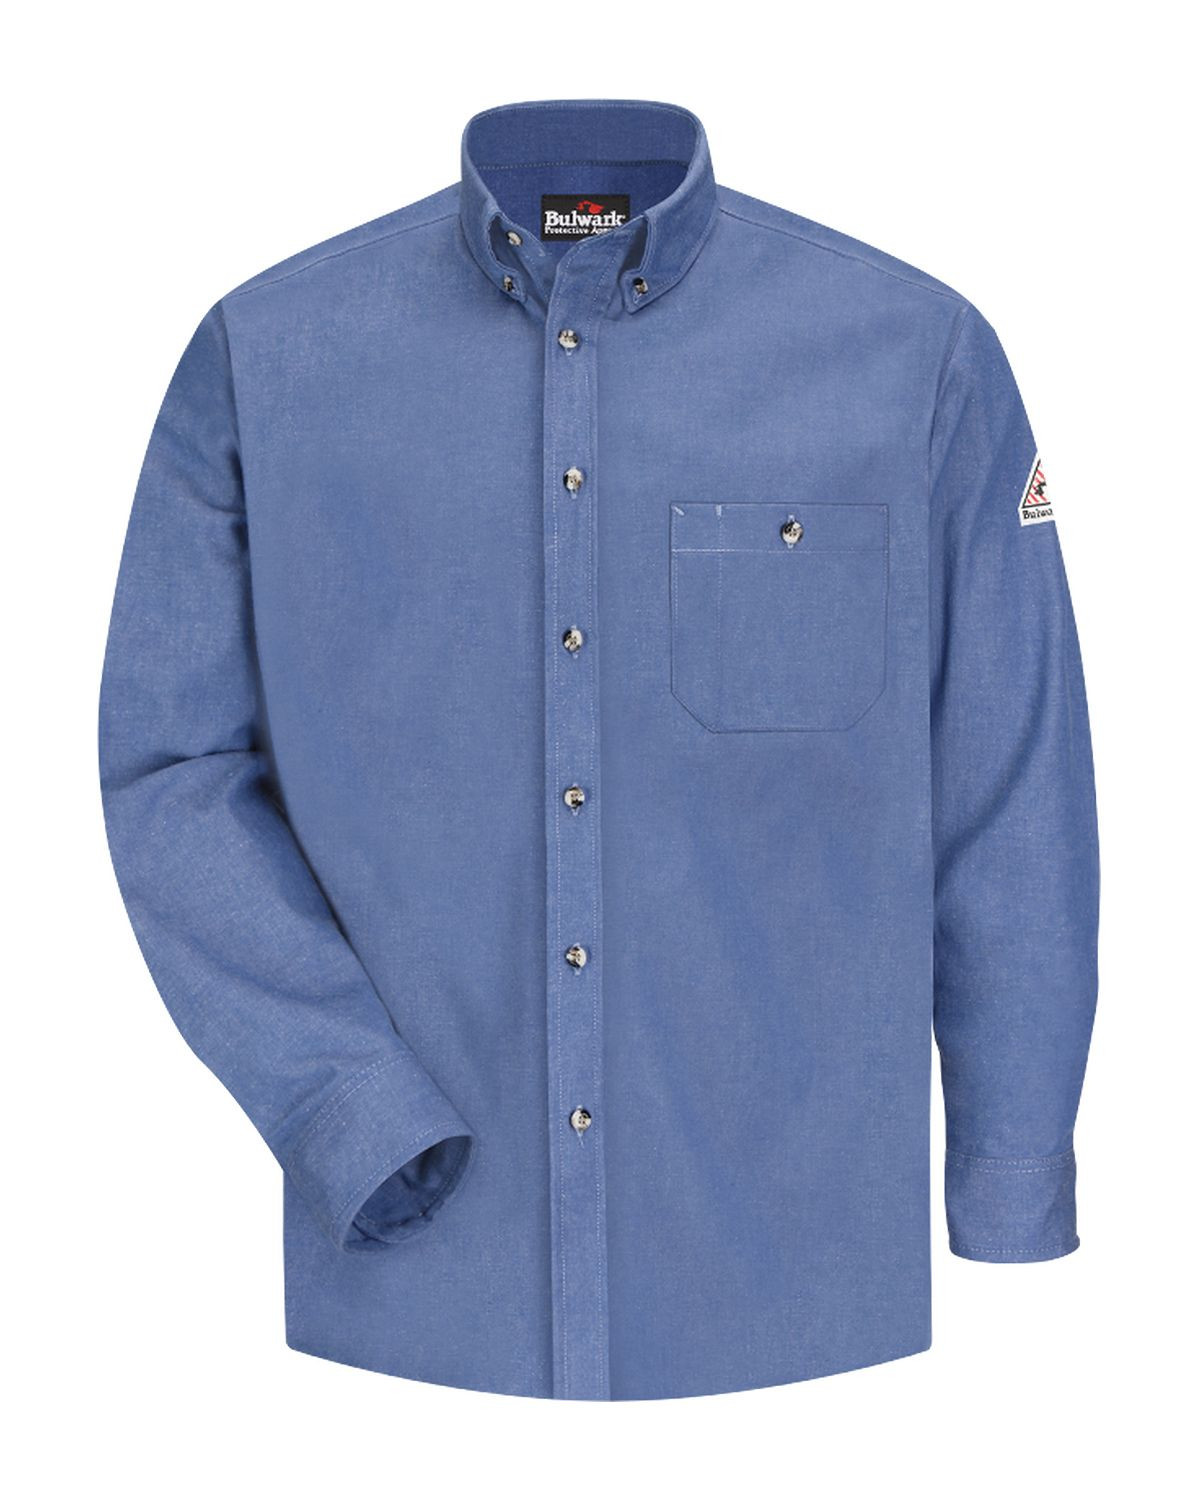 Bulwark SEG2L Men's Excel Denim Work Shirt - Long Sizes - Light Blue Denim - MT #denim